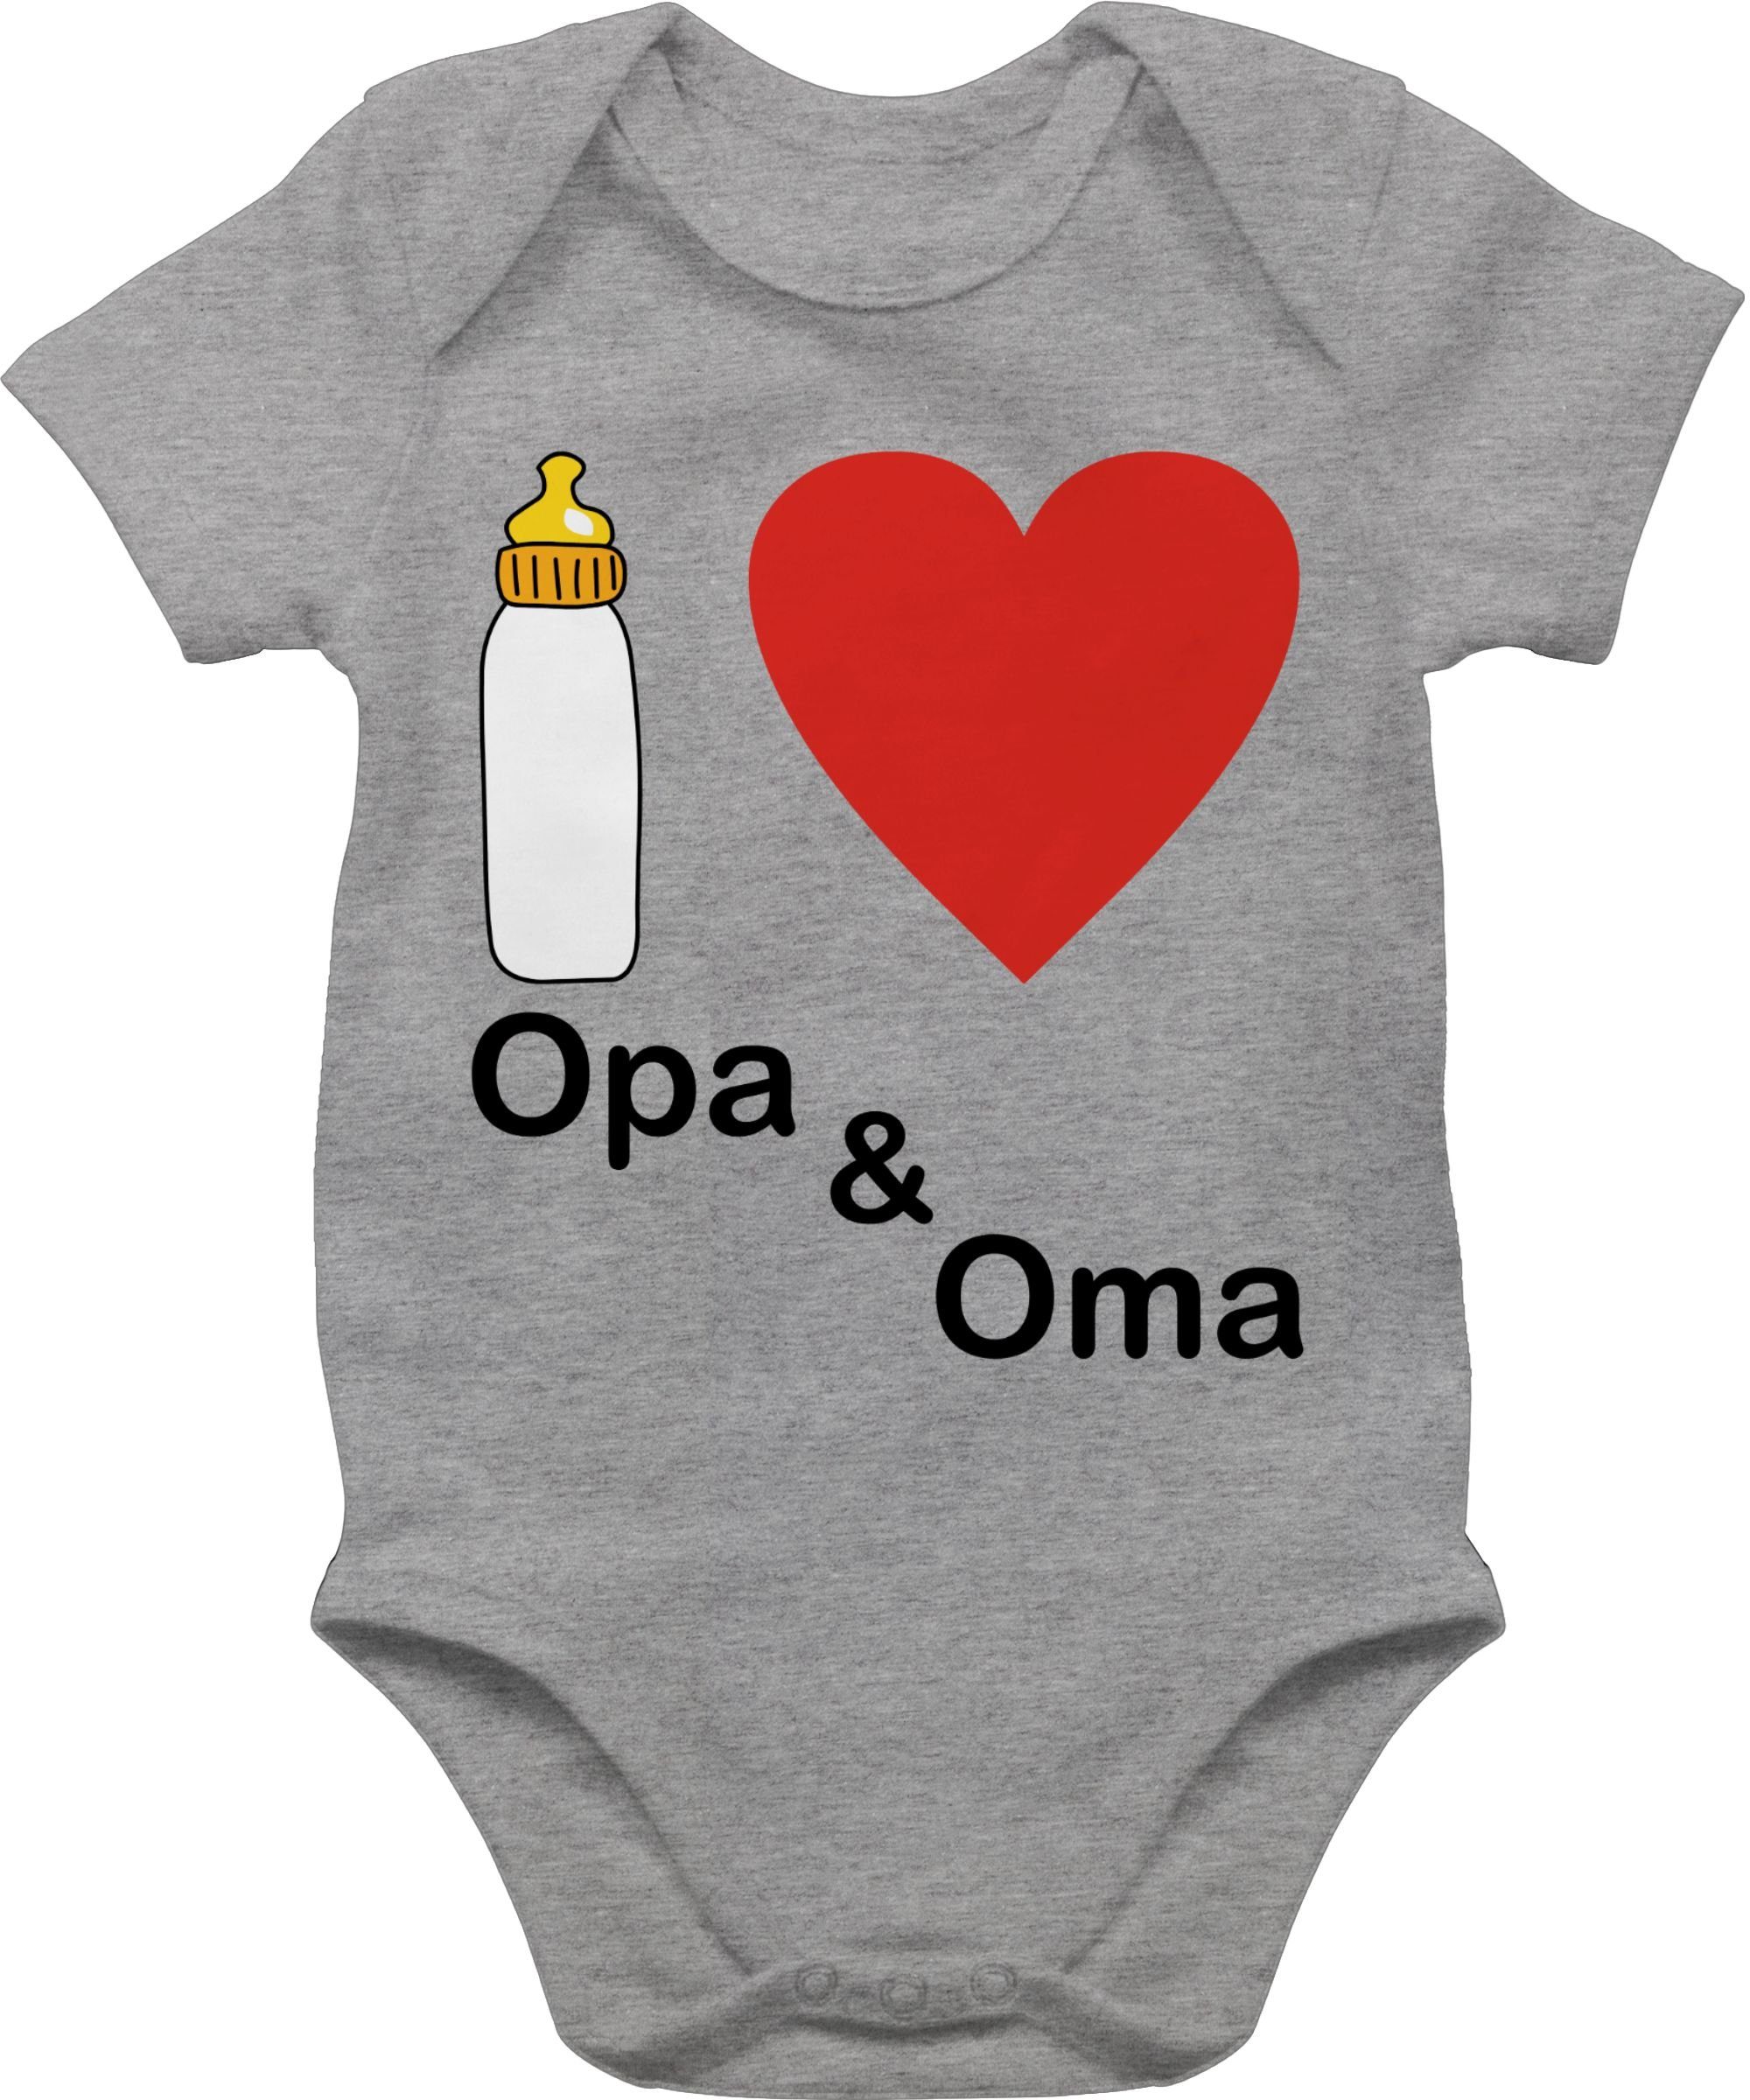 Shirtracer Shirtbody I love Opa und Nuckelflasche Aktuelle Grau Baby 2 Trends meliert Oma